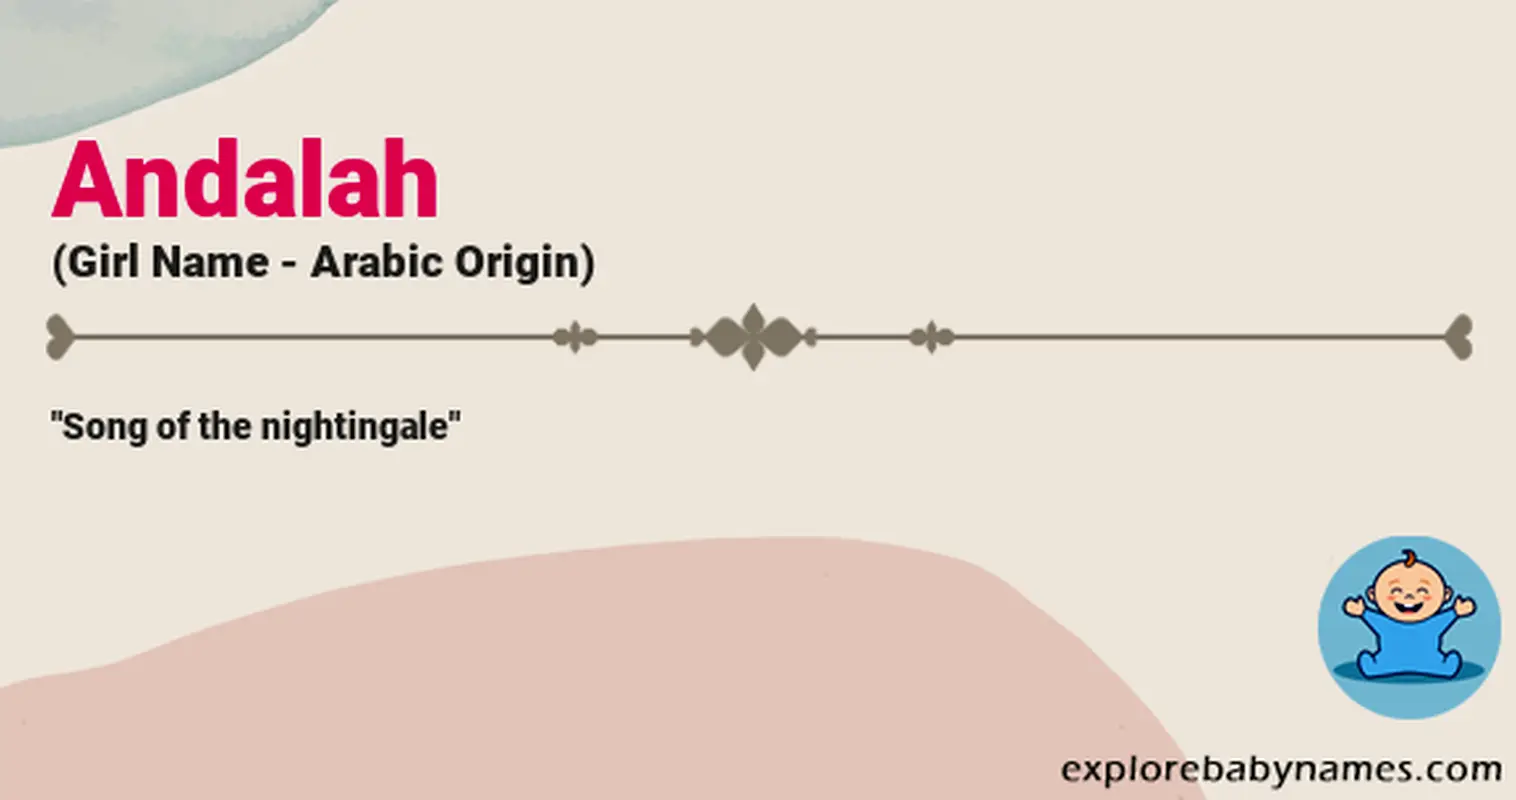 Meaning of Andalah